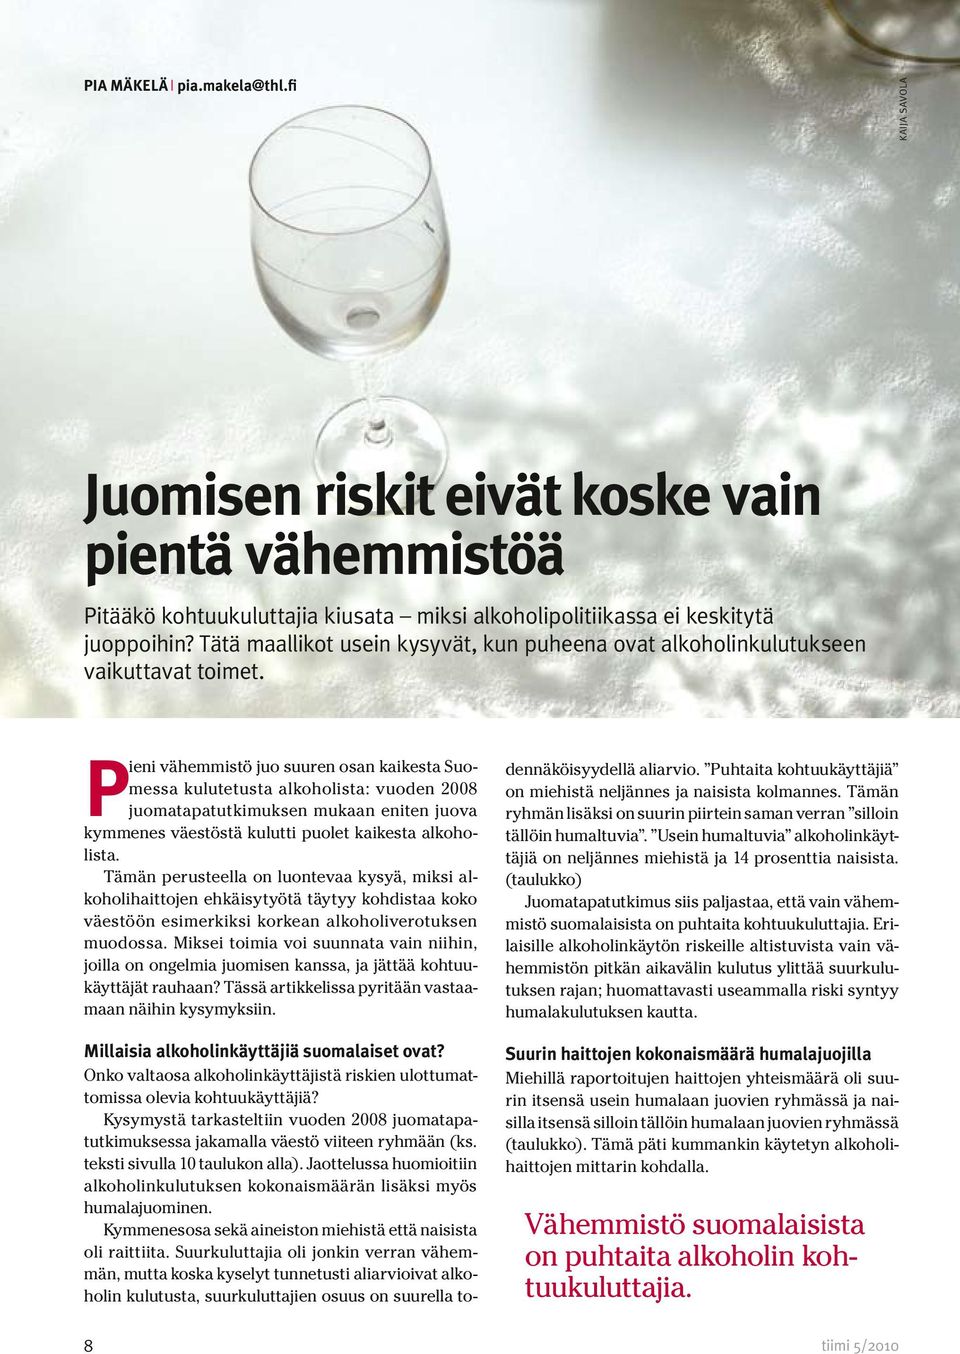 Pieni vähemmistö juo suuren osan kaikesta Suomessa kulutetusta alkoholista: vuoden 2008 juomatapatutkimuksen mukaan eniten juova kymmenes väestöstä kulutti puolet kaikesta alkoholista.